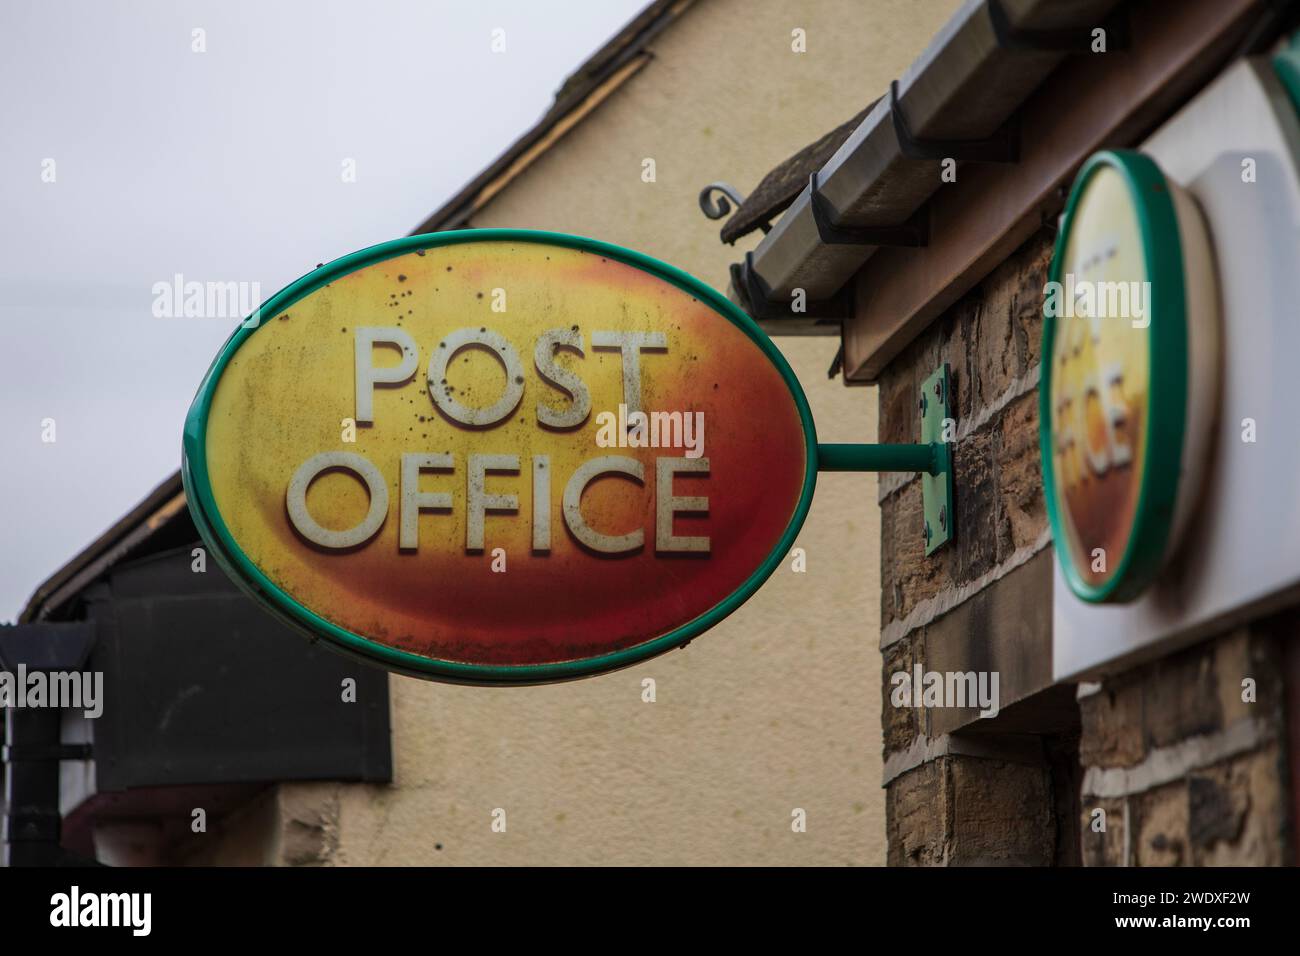 Hightown Post Office, wo ein Postmeister wegen falscher Buchhaltung verurteilt wurde. Halifax Road, Liversedge, Yorkshire. Stockfoto